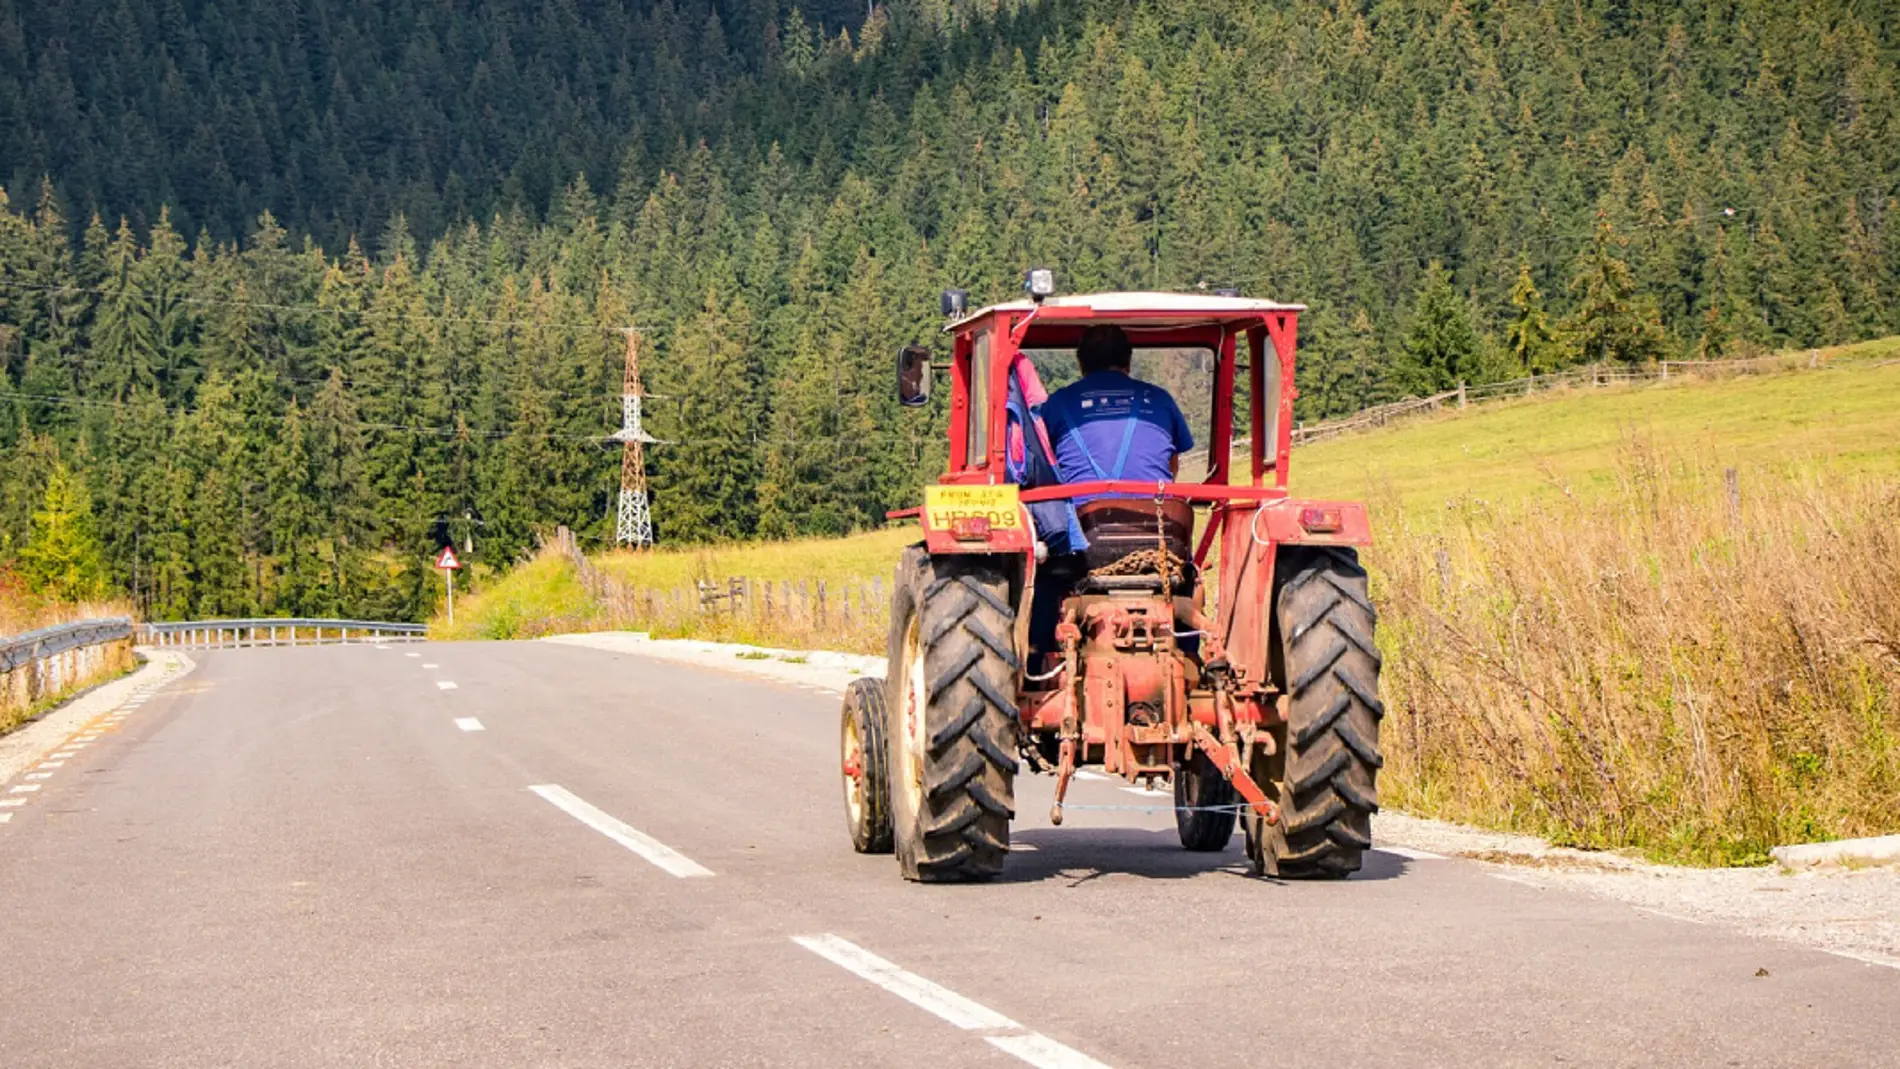 Adelantar con línea continua: ¿los vehículos agrícolas y de obras entran dentro de las excepciones?